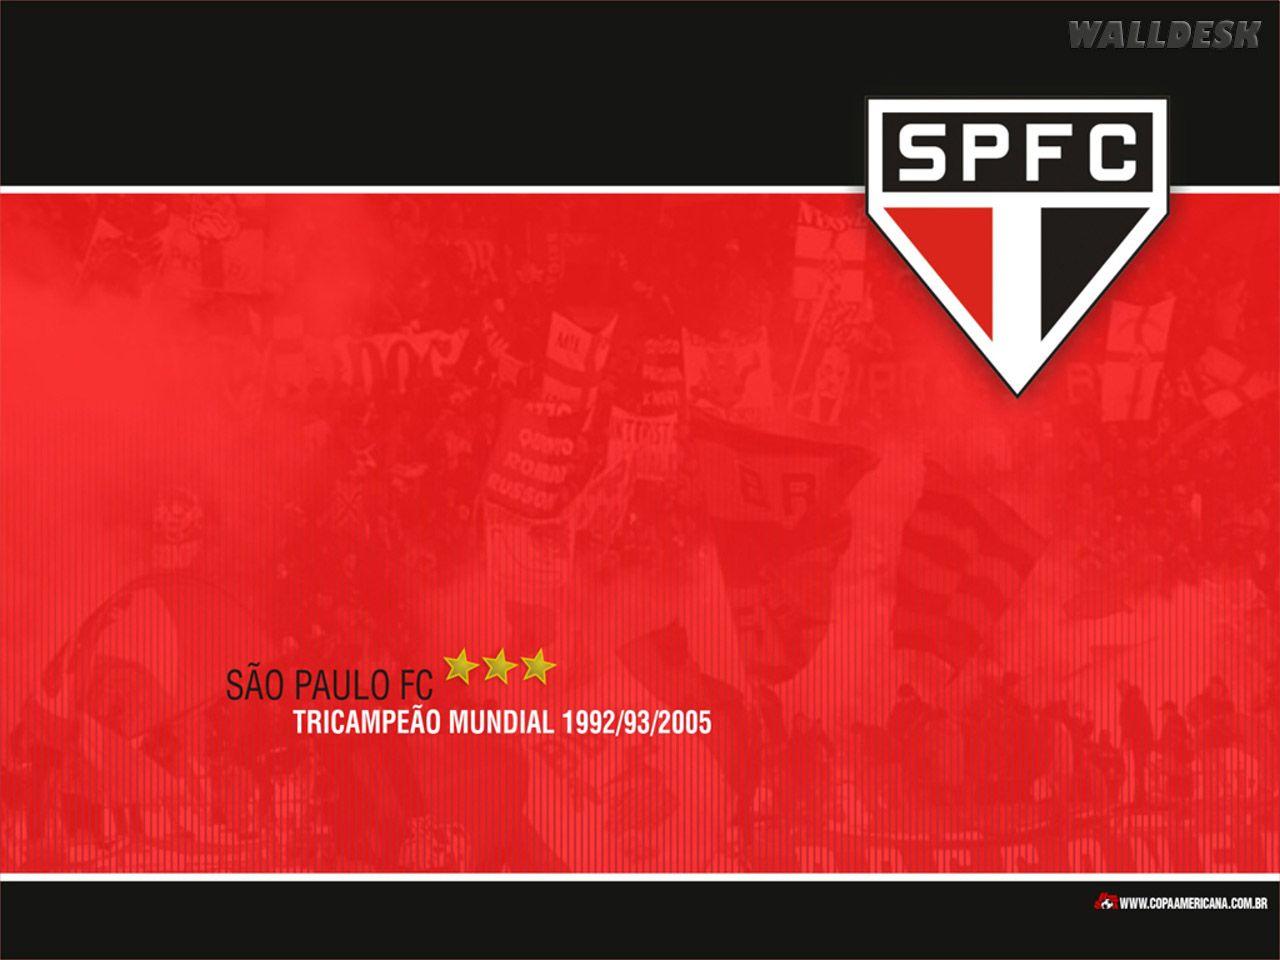 Papel de parede São Paulo SPFC fotos grátis. Papéis de parede